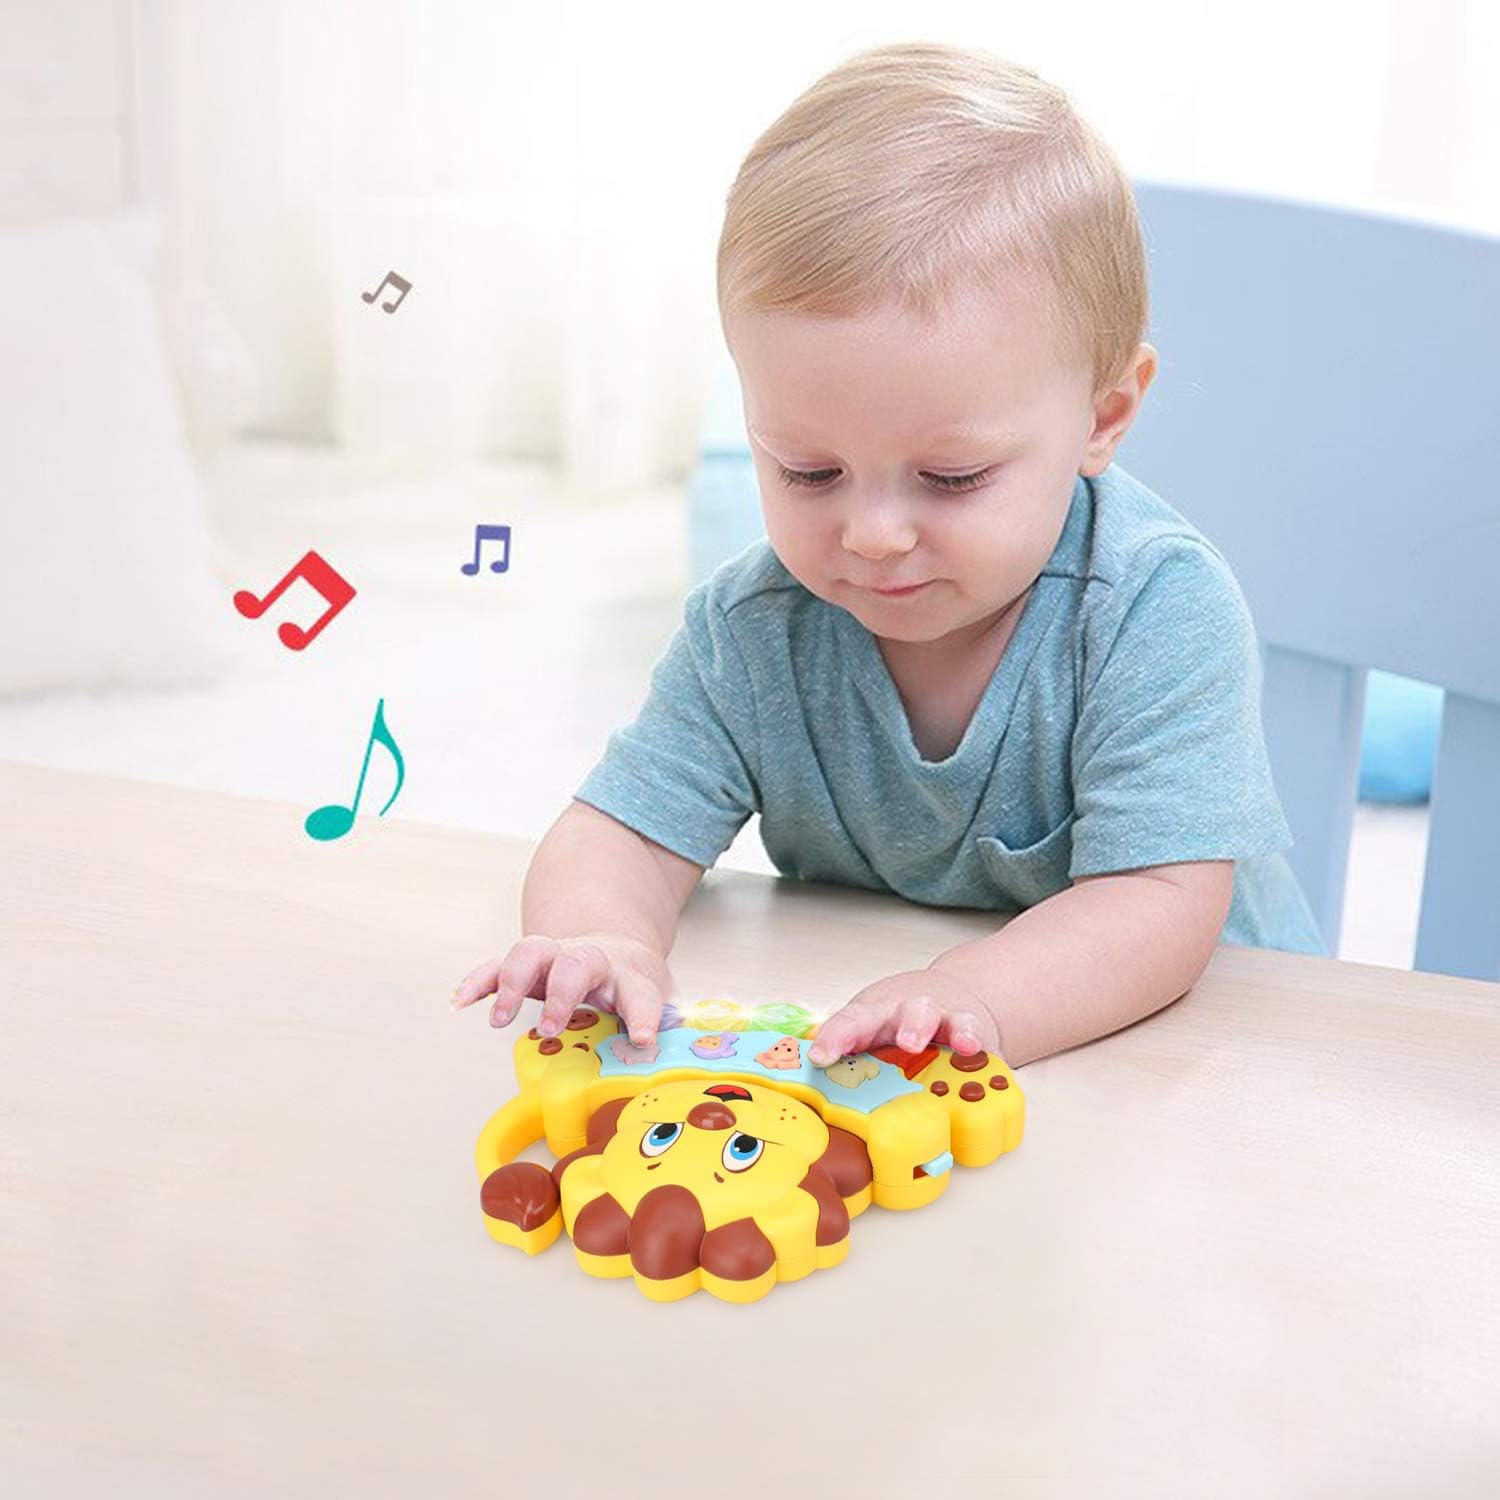 لعبة تعليمية على شكل اسد من ستيم لايف - لعبة موسيقية للاطفال والرضع بتصميم بيانو مضيء - كيبورد موسيقي يحتوي على 5 مفاتيح مرقمة - مثالية للاولاد والبنات من عمر سنتين